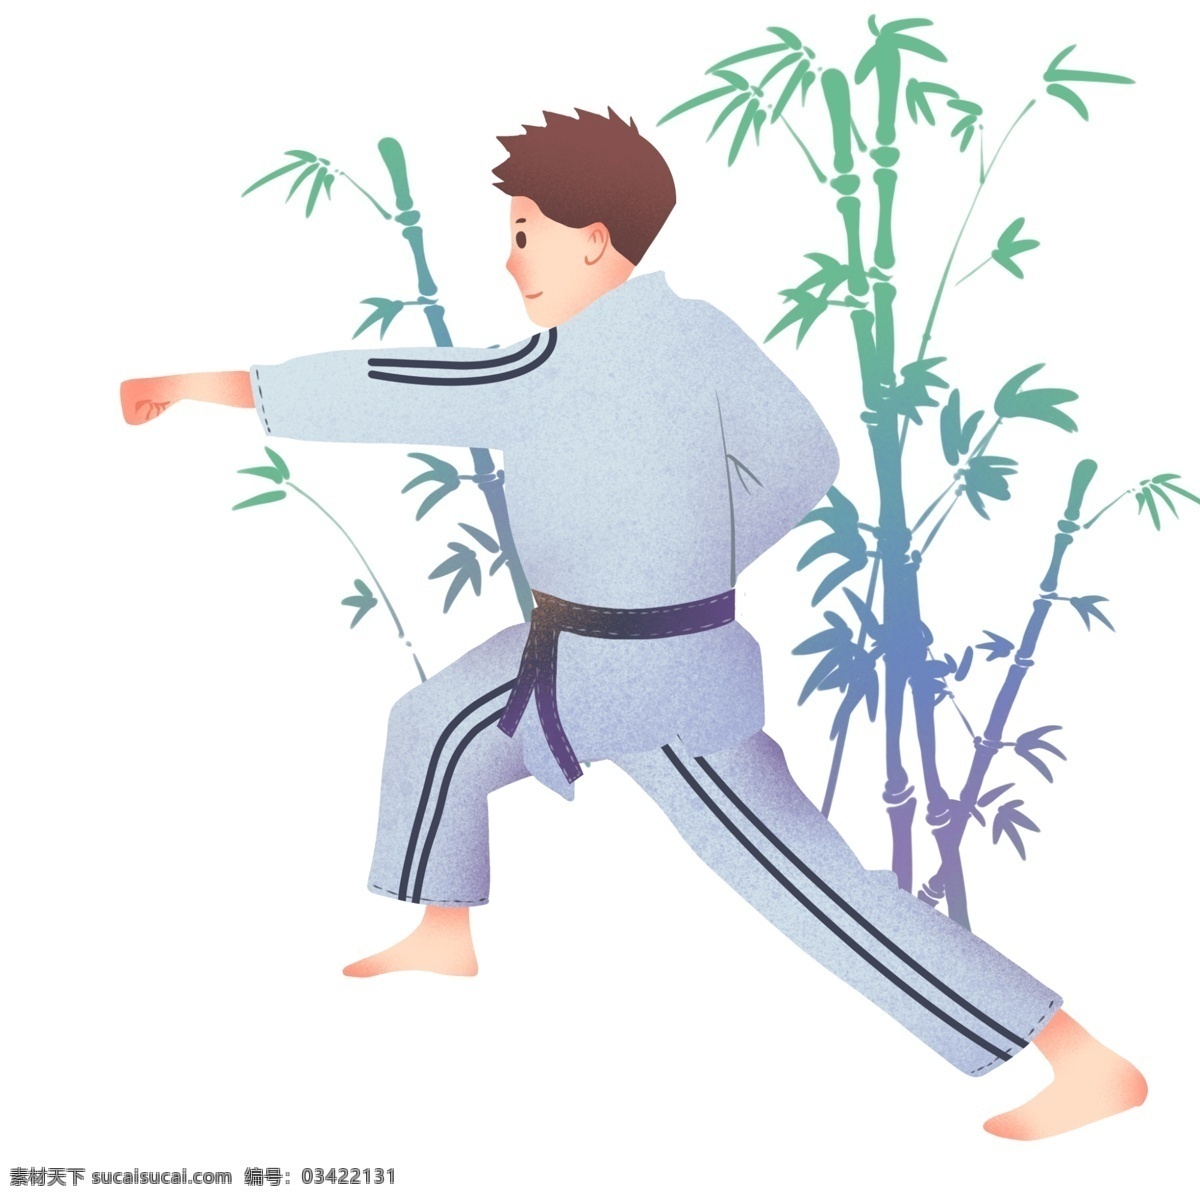 柔道 健身 小 男孩 运动健身插画 柔道健身 健身的小男孩 绿色的叶子 竹子装饰 卡通的人物